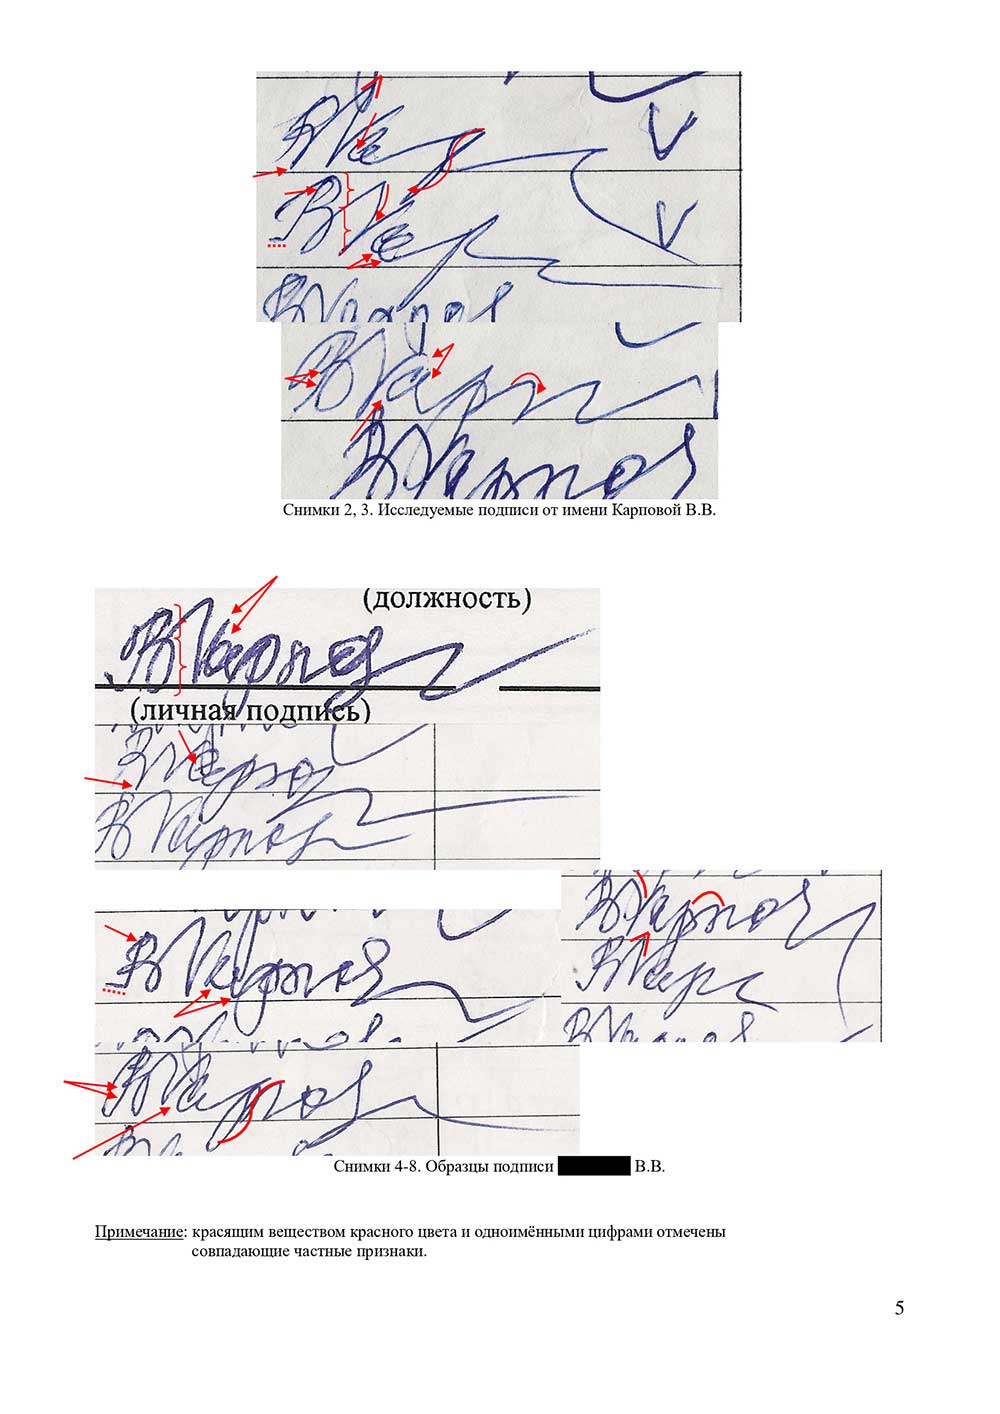 Судебная и досудебная почерковедческая экспертиза документов. Графологическая экспертиза почерка, подписи во Владивостоке